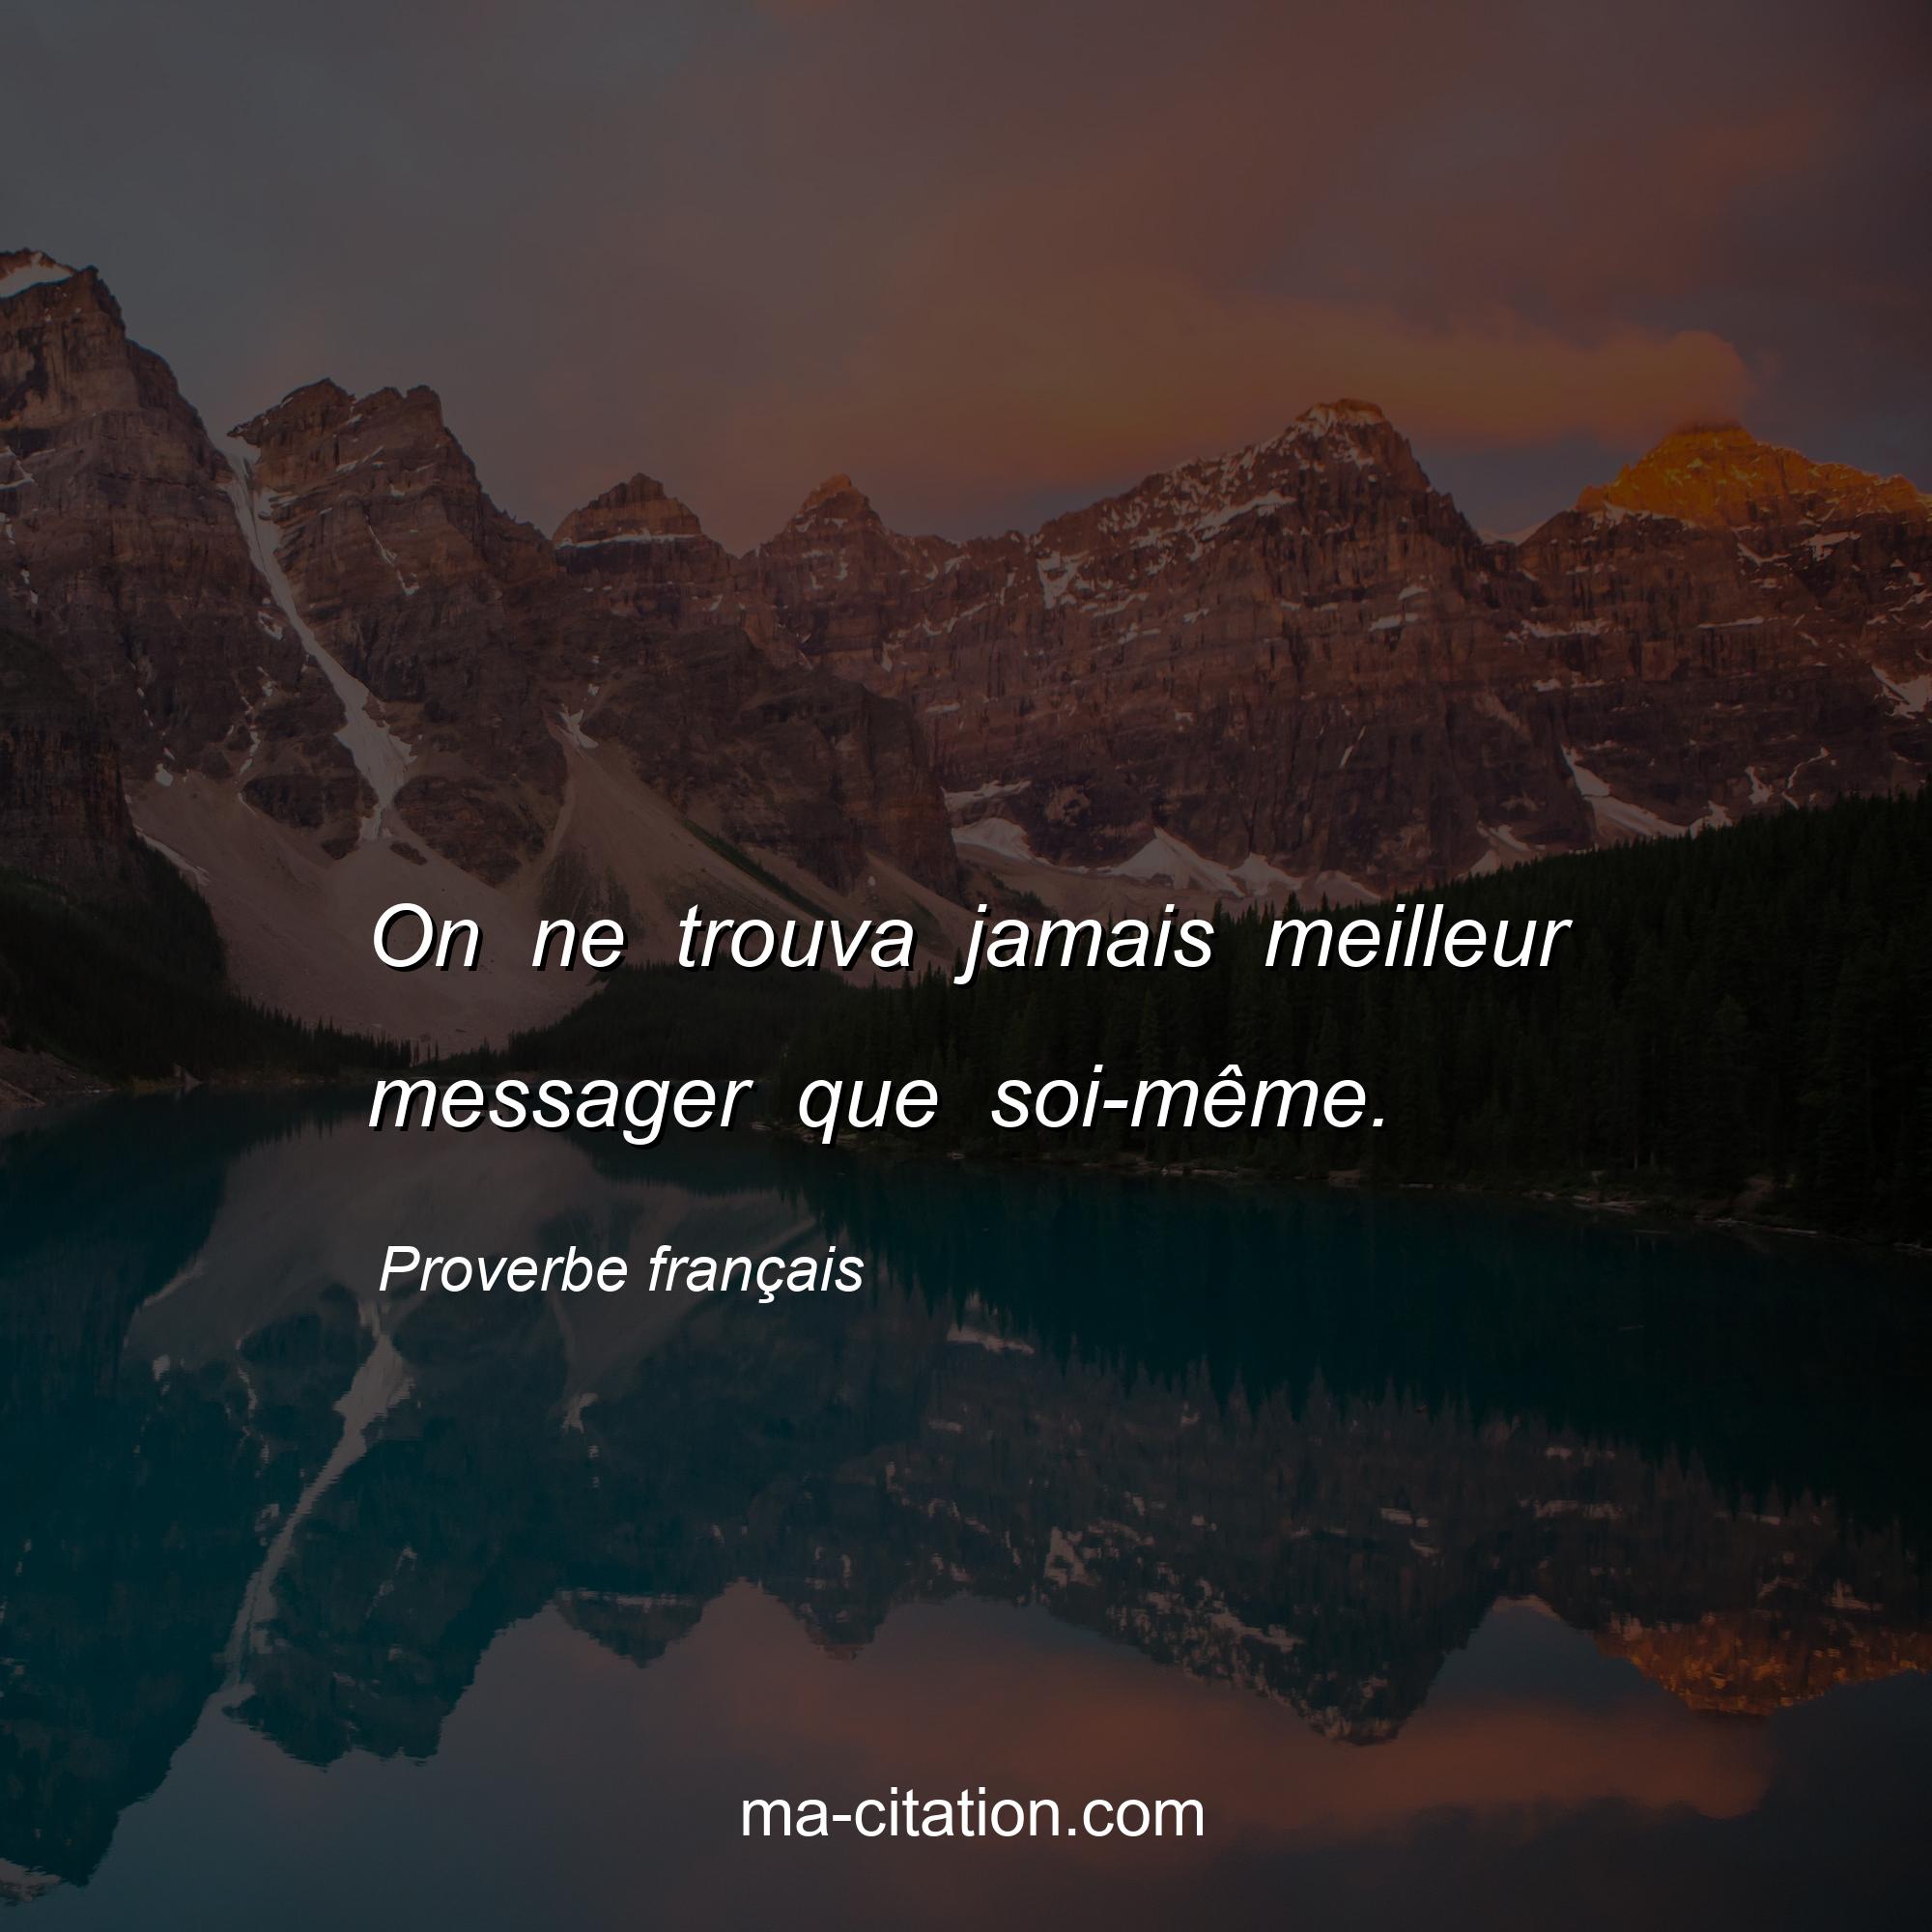 Proverbe français : On ne trouva jamais meilleur messager que soi-même.